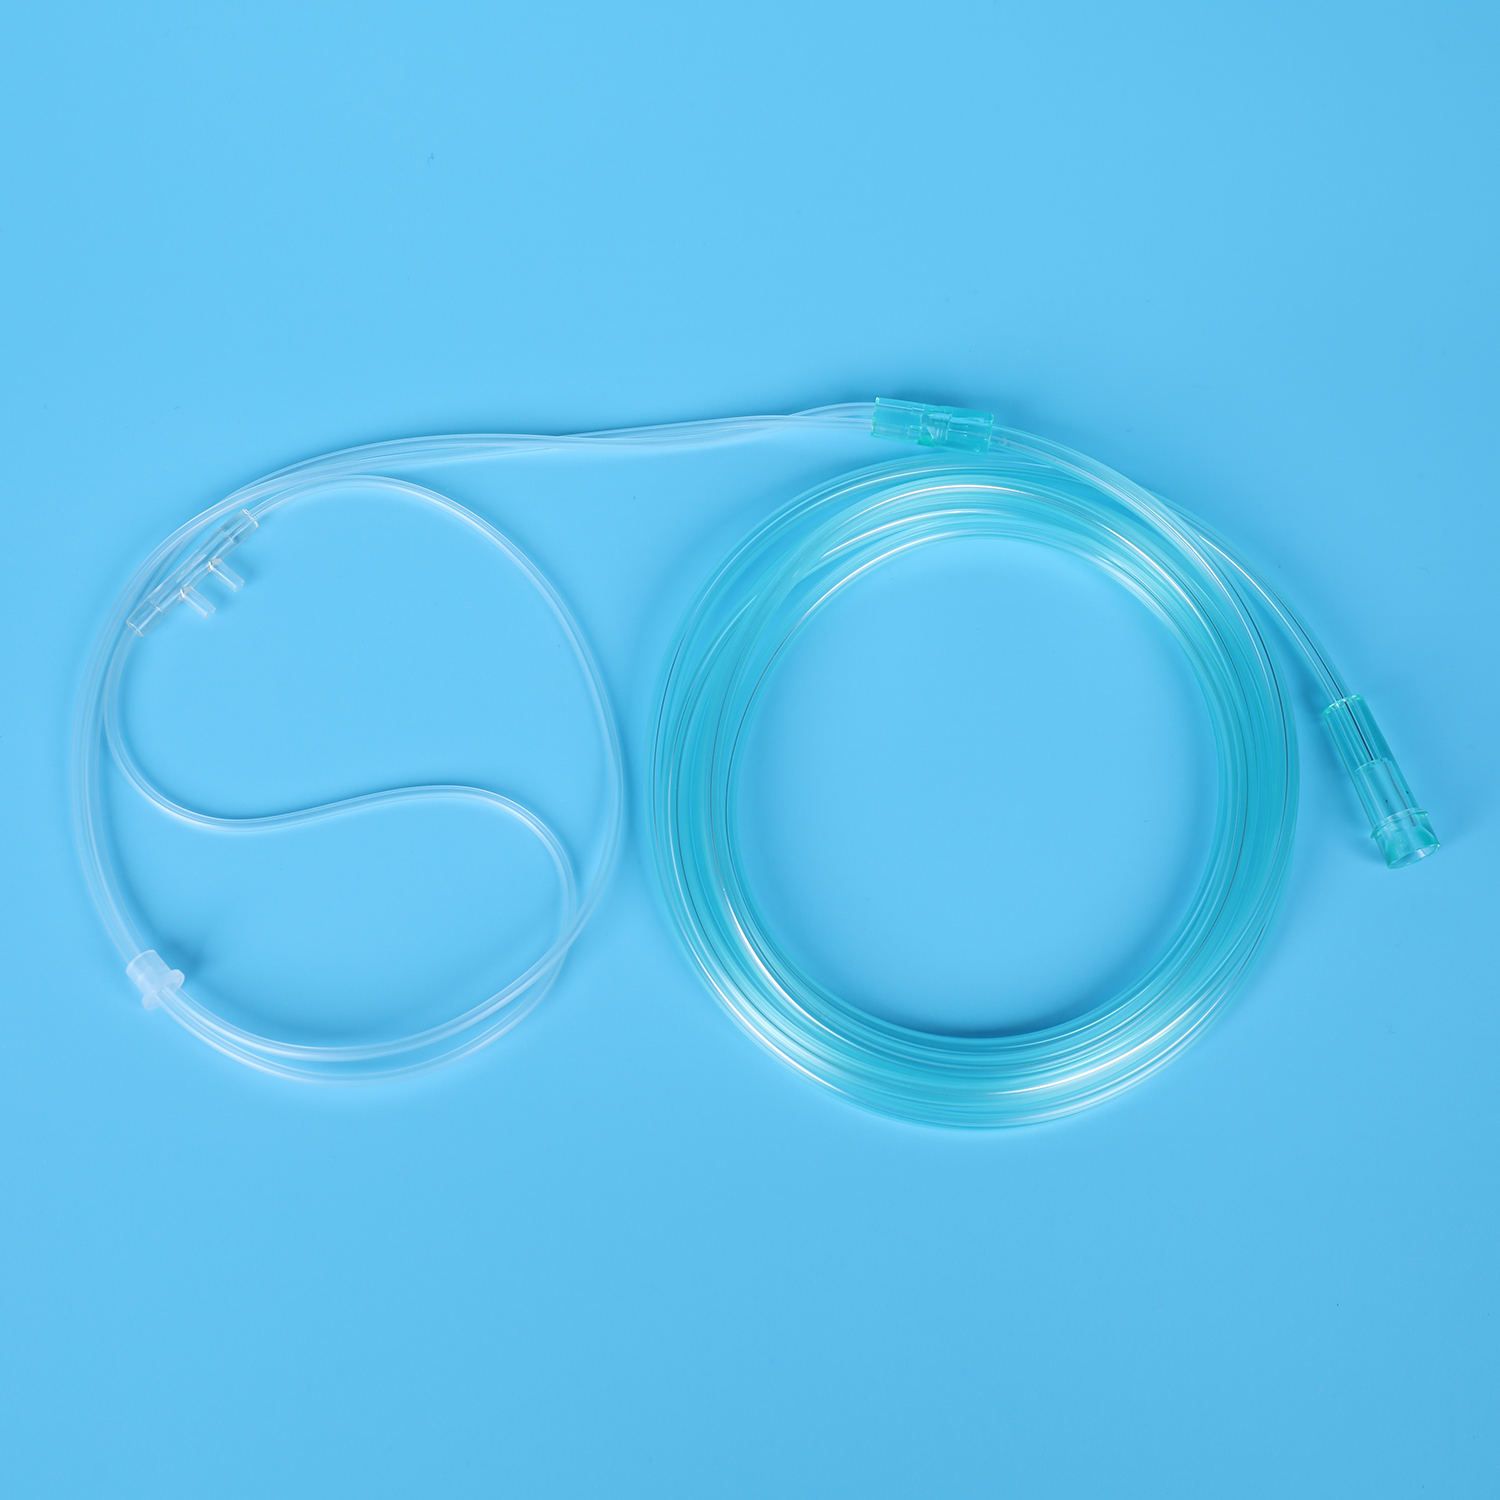 Kertakäyttöinen happinenäkanyyli PVC läpinäkyvä putki Lääkintätarvike Lääketieteellinen materiaali Pehmeä kärki happihoitolaite happiputki kanyyli